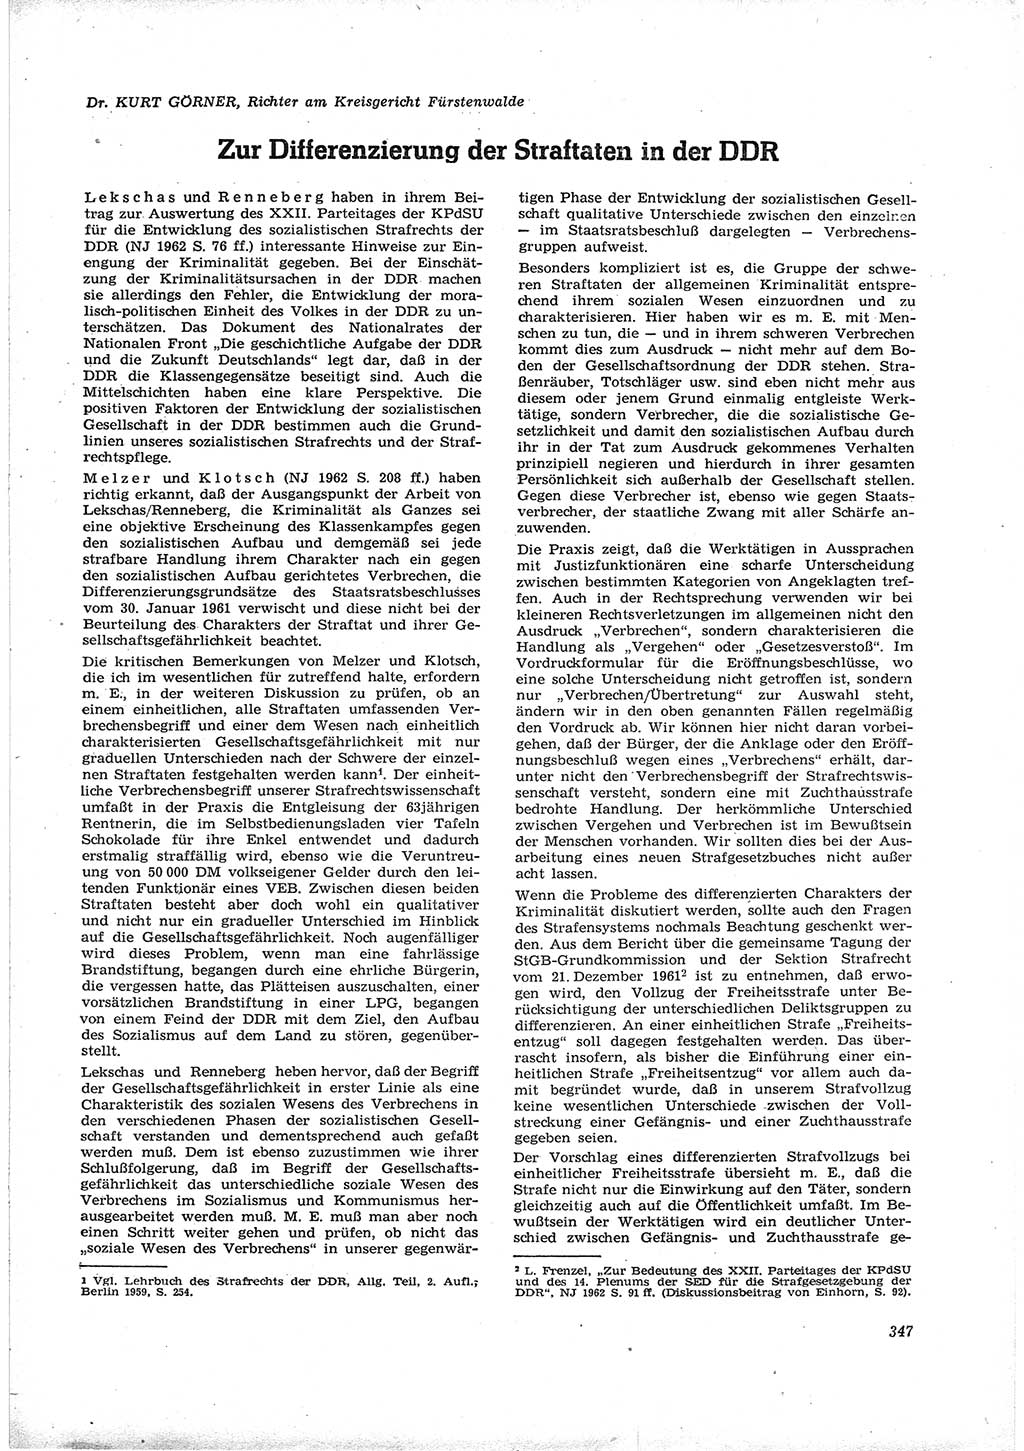 Neue Justiz (NJ), Zeitschrift für Recht und Rechtswissenschaft [Deutsche Demokratische Republik (DDR)], 16. Jahrgang 1962, Seite 347 (NJ DDR 1962, S. 347)